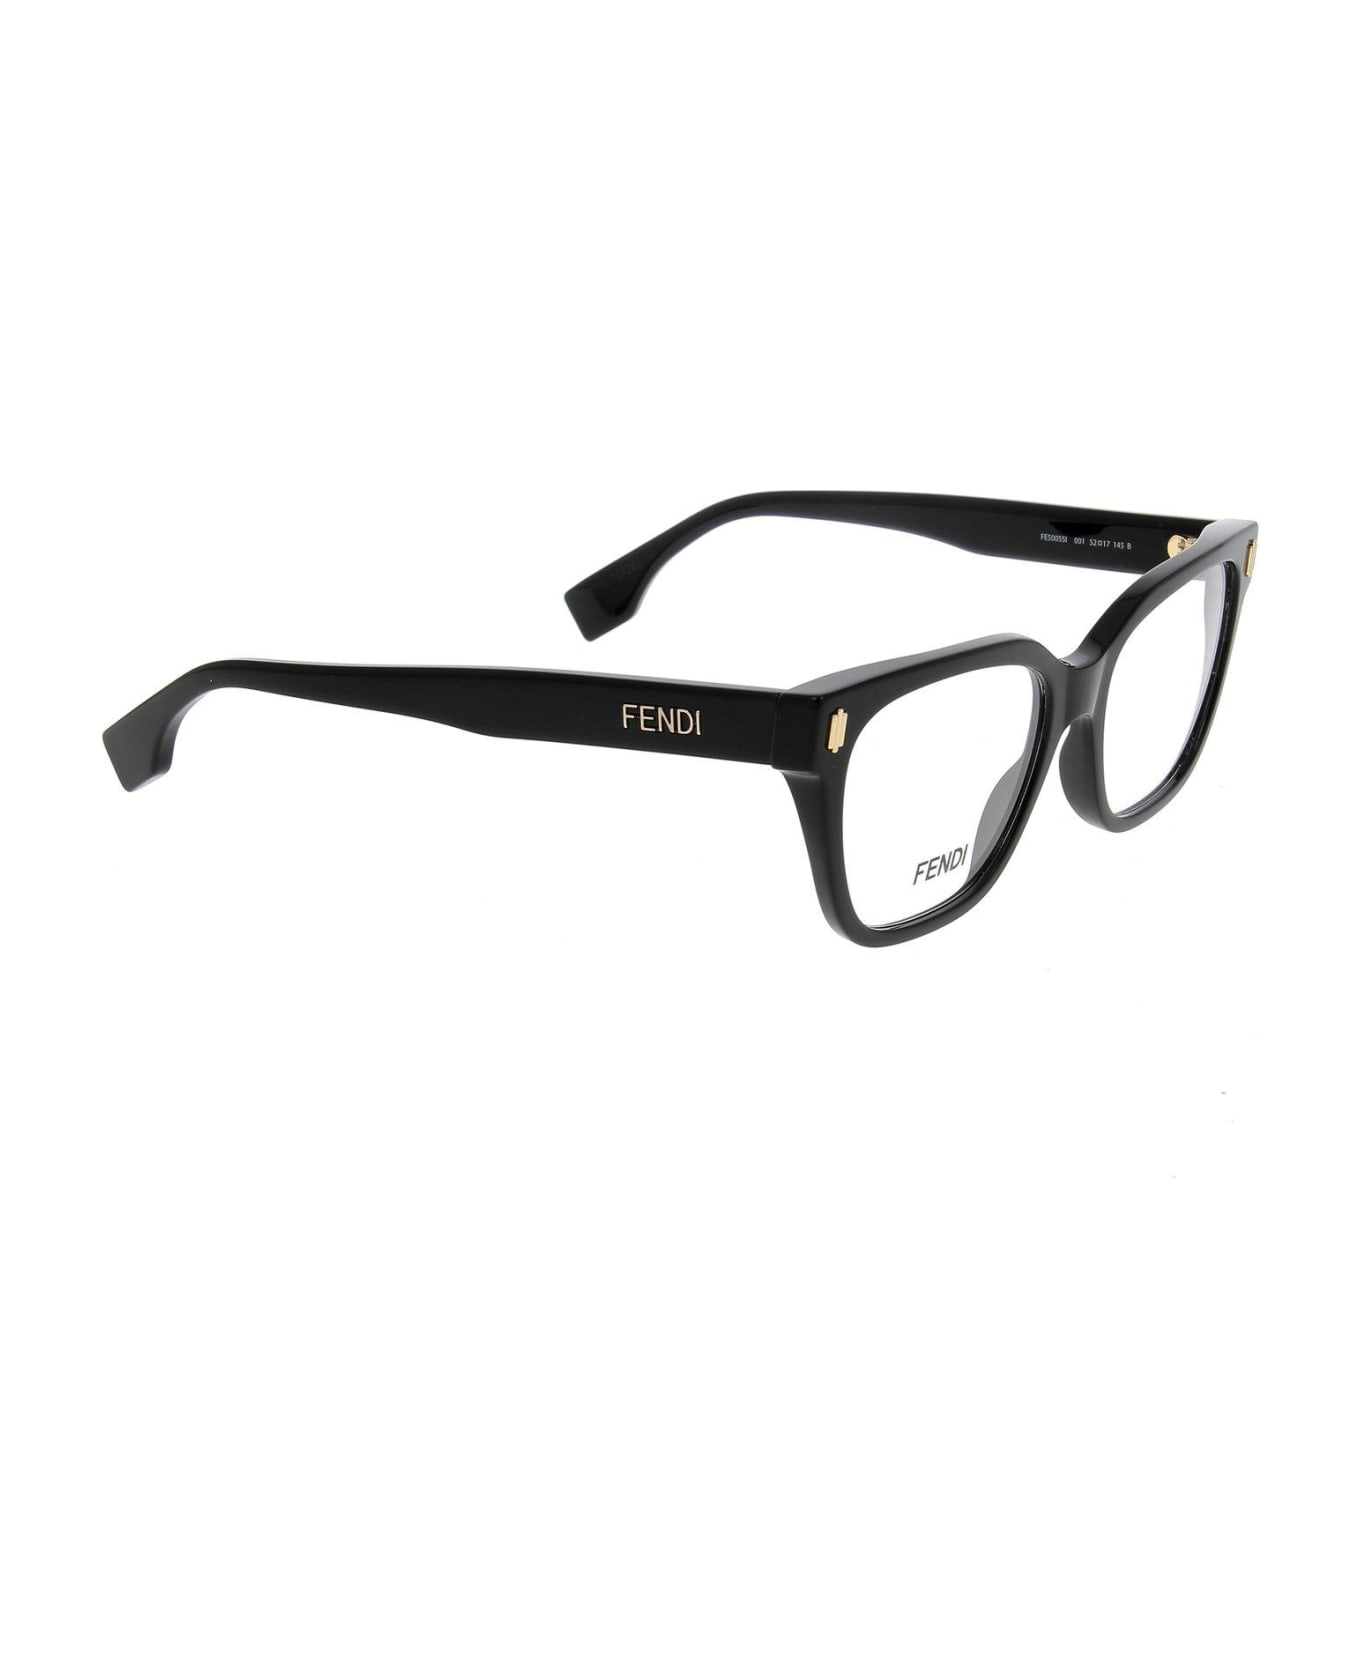 Fendi Eyewear Rectangle Frame Glasses - 001 アイウェア